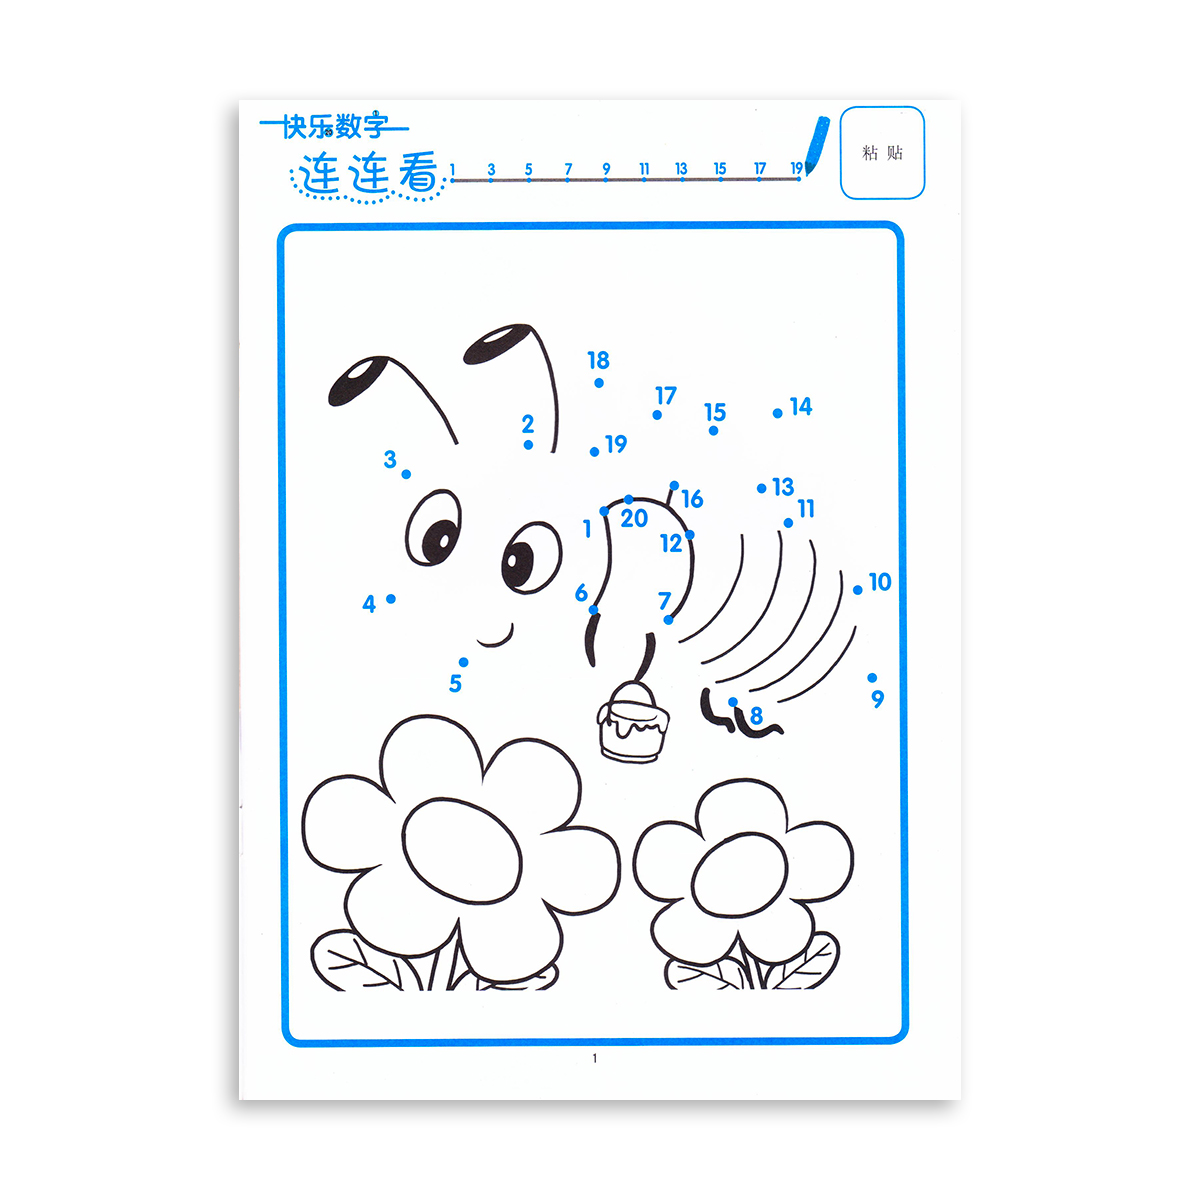 正版早教童书宝宝数字连线图游戏填色:快乐数字连连看